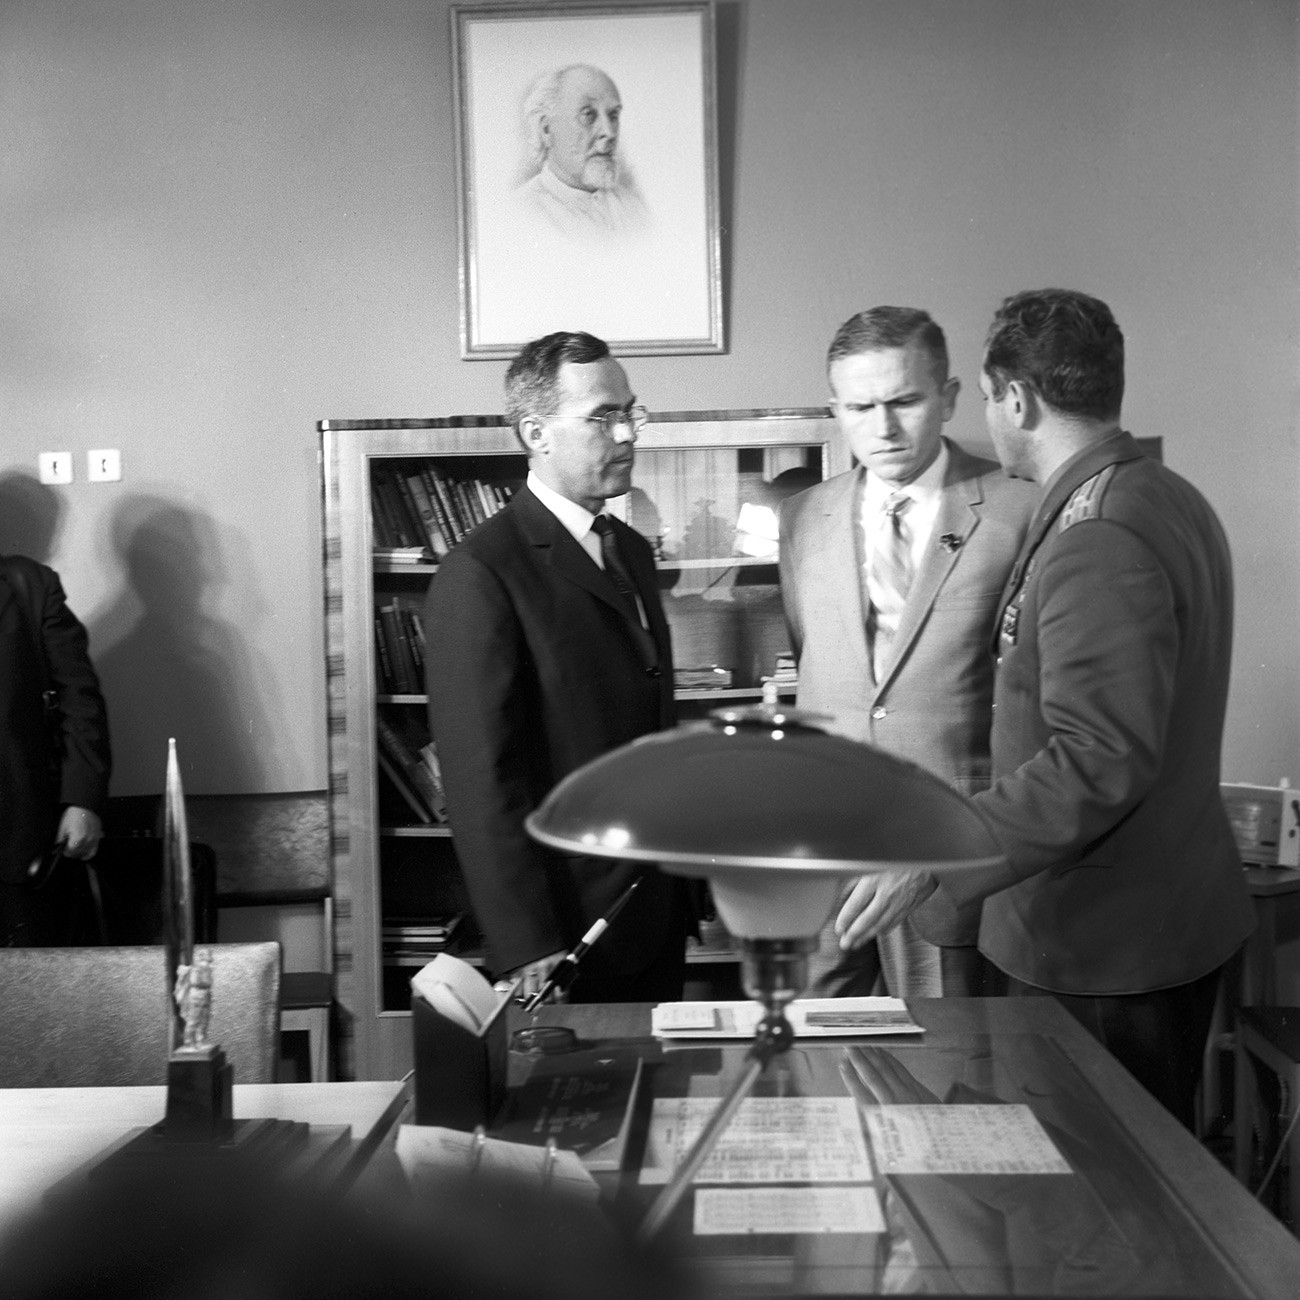 Sovjetski kozmonavt German Titov (desno) in ameriški astronavt Frank Borman (v sredini) v kabinetu muzeja Jurija Gagarina, Zvezdno mesto, 1. julija 1969